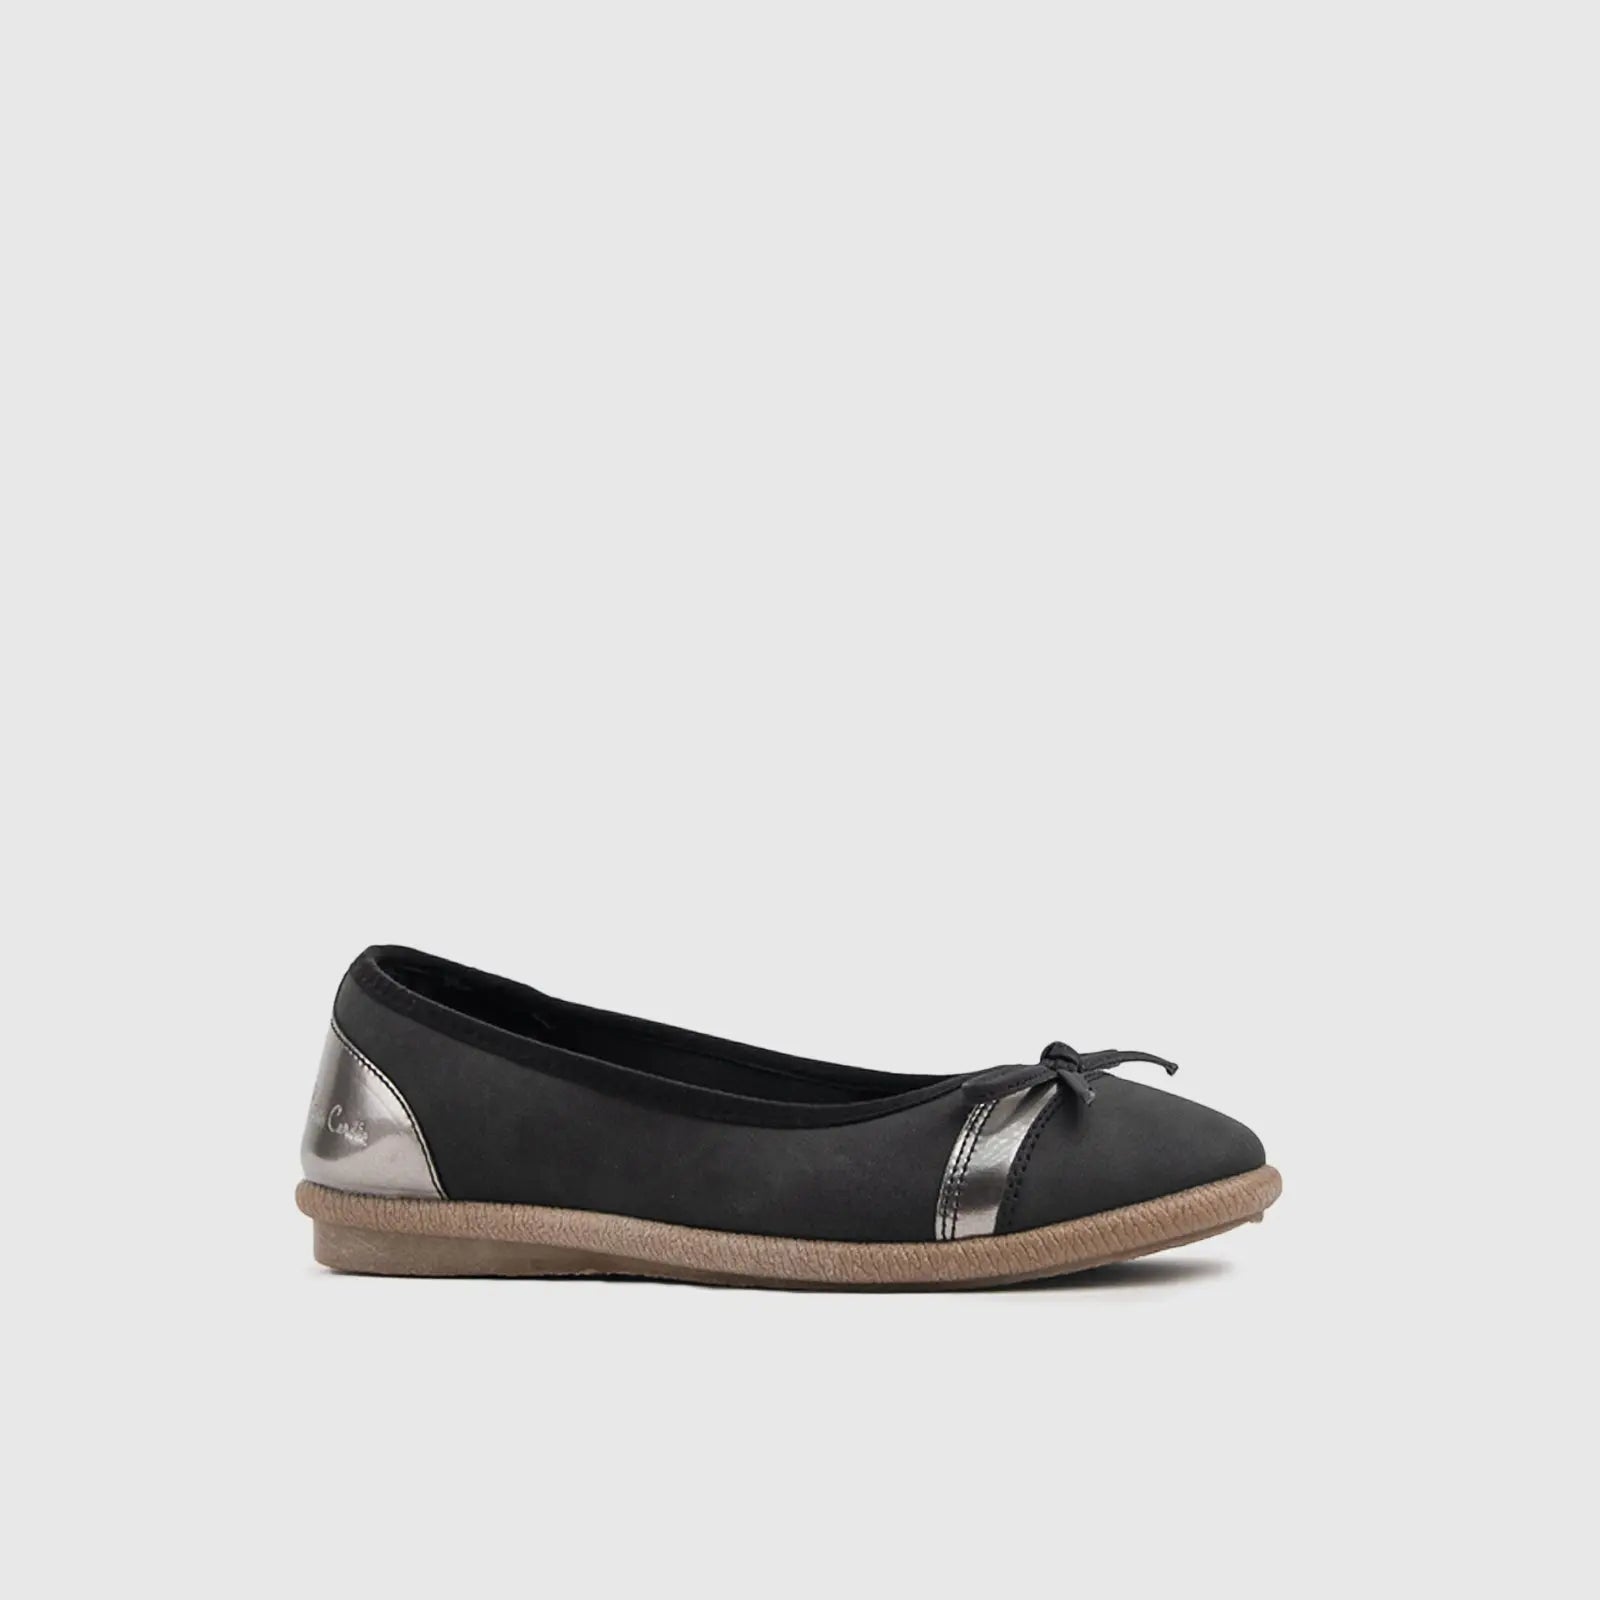 Pierre Cardin Casual Sandals - 10314 Black Sandals | familyshoecentre